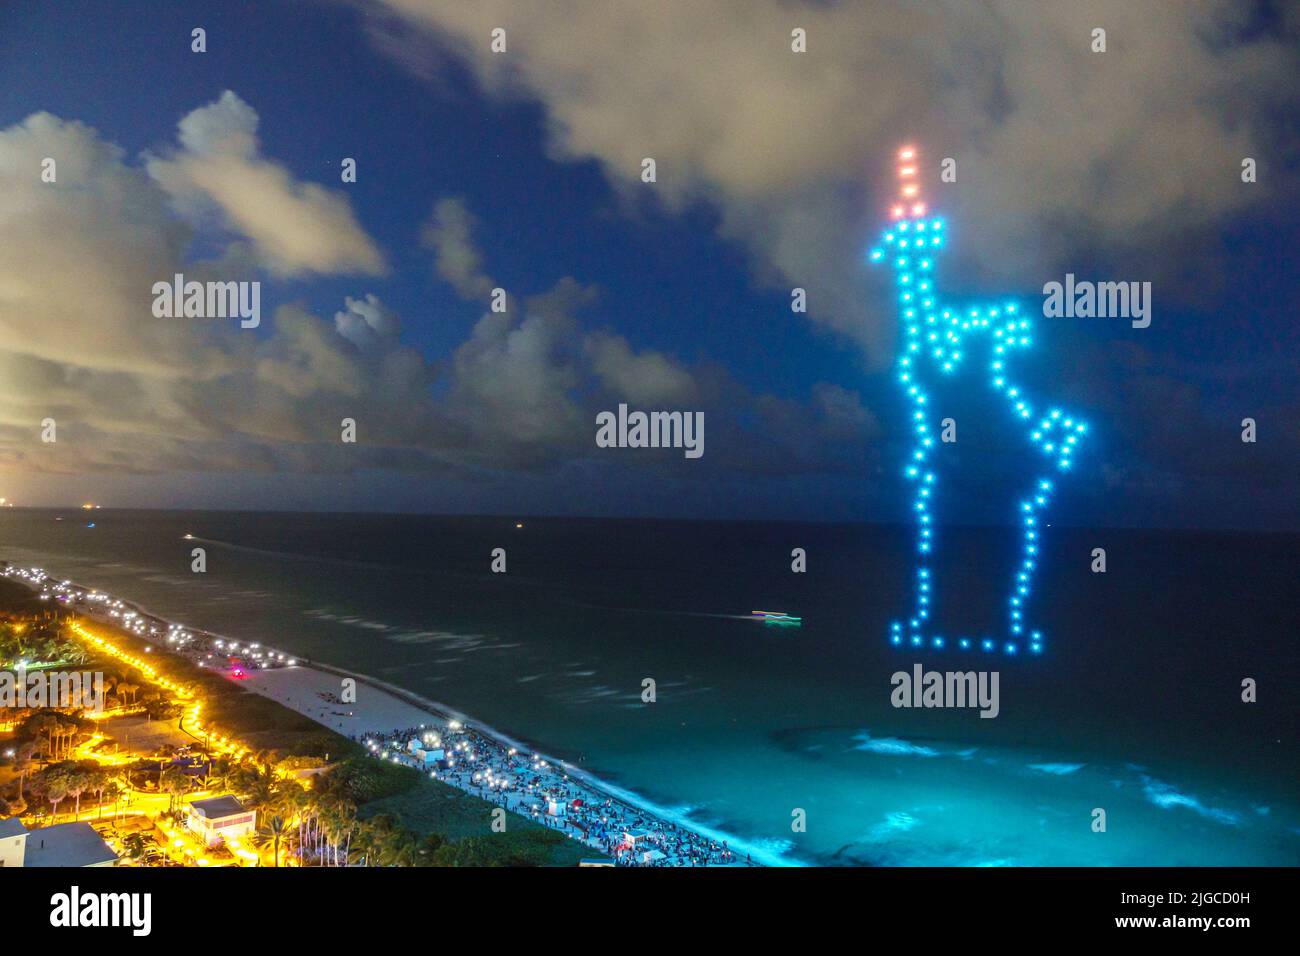 Miami Beach Florida,Ocean Terrace Fire sur le quatrième 4th de juillet Festival célébration de l'événement, drone spectacle de lumière drones formant Statue de la liberté, aérien o Banque D'Images